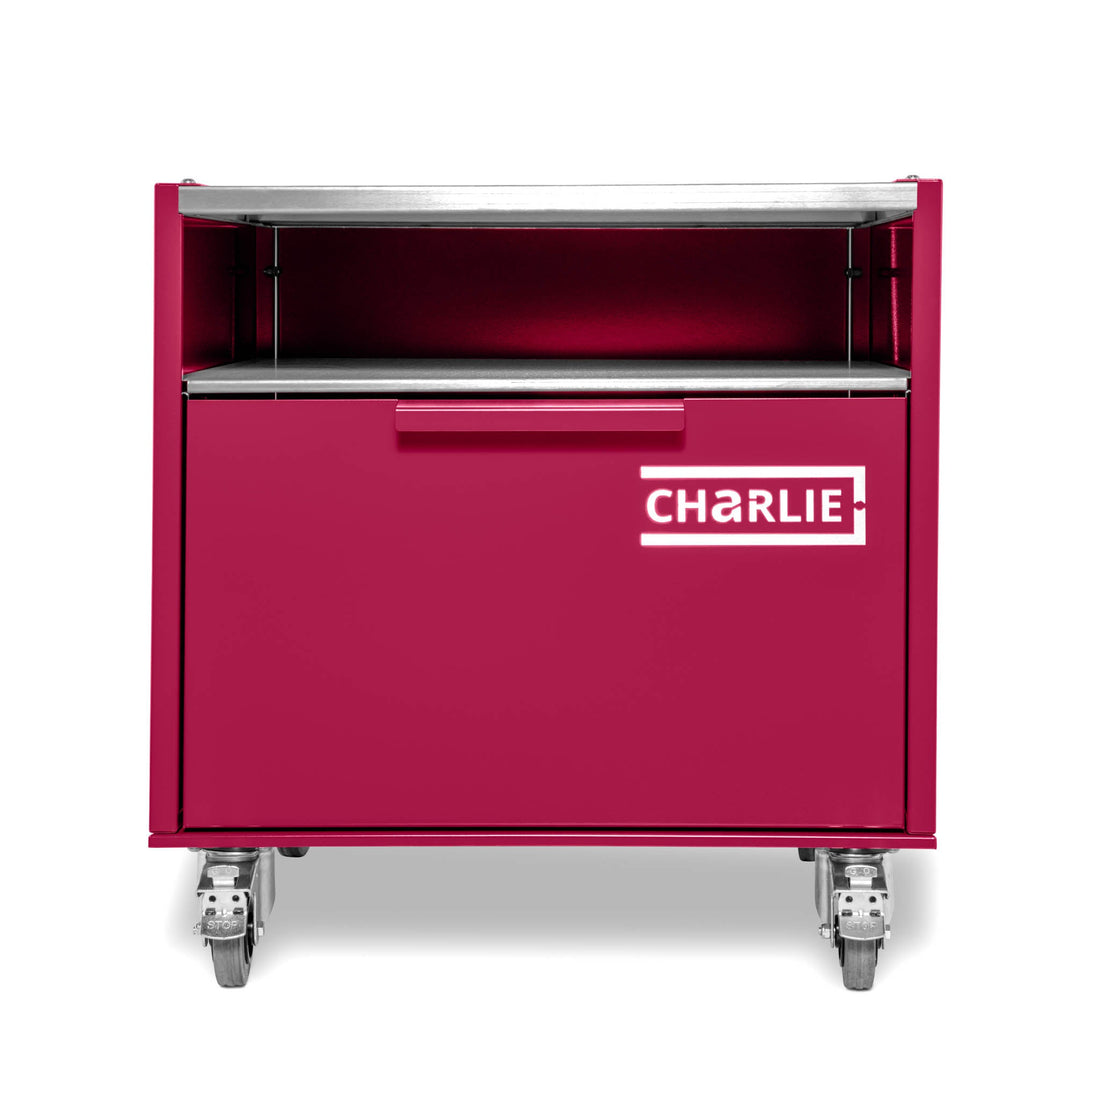 Charlie Base Cabinet - Rhubarb - Charlie Oven